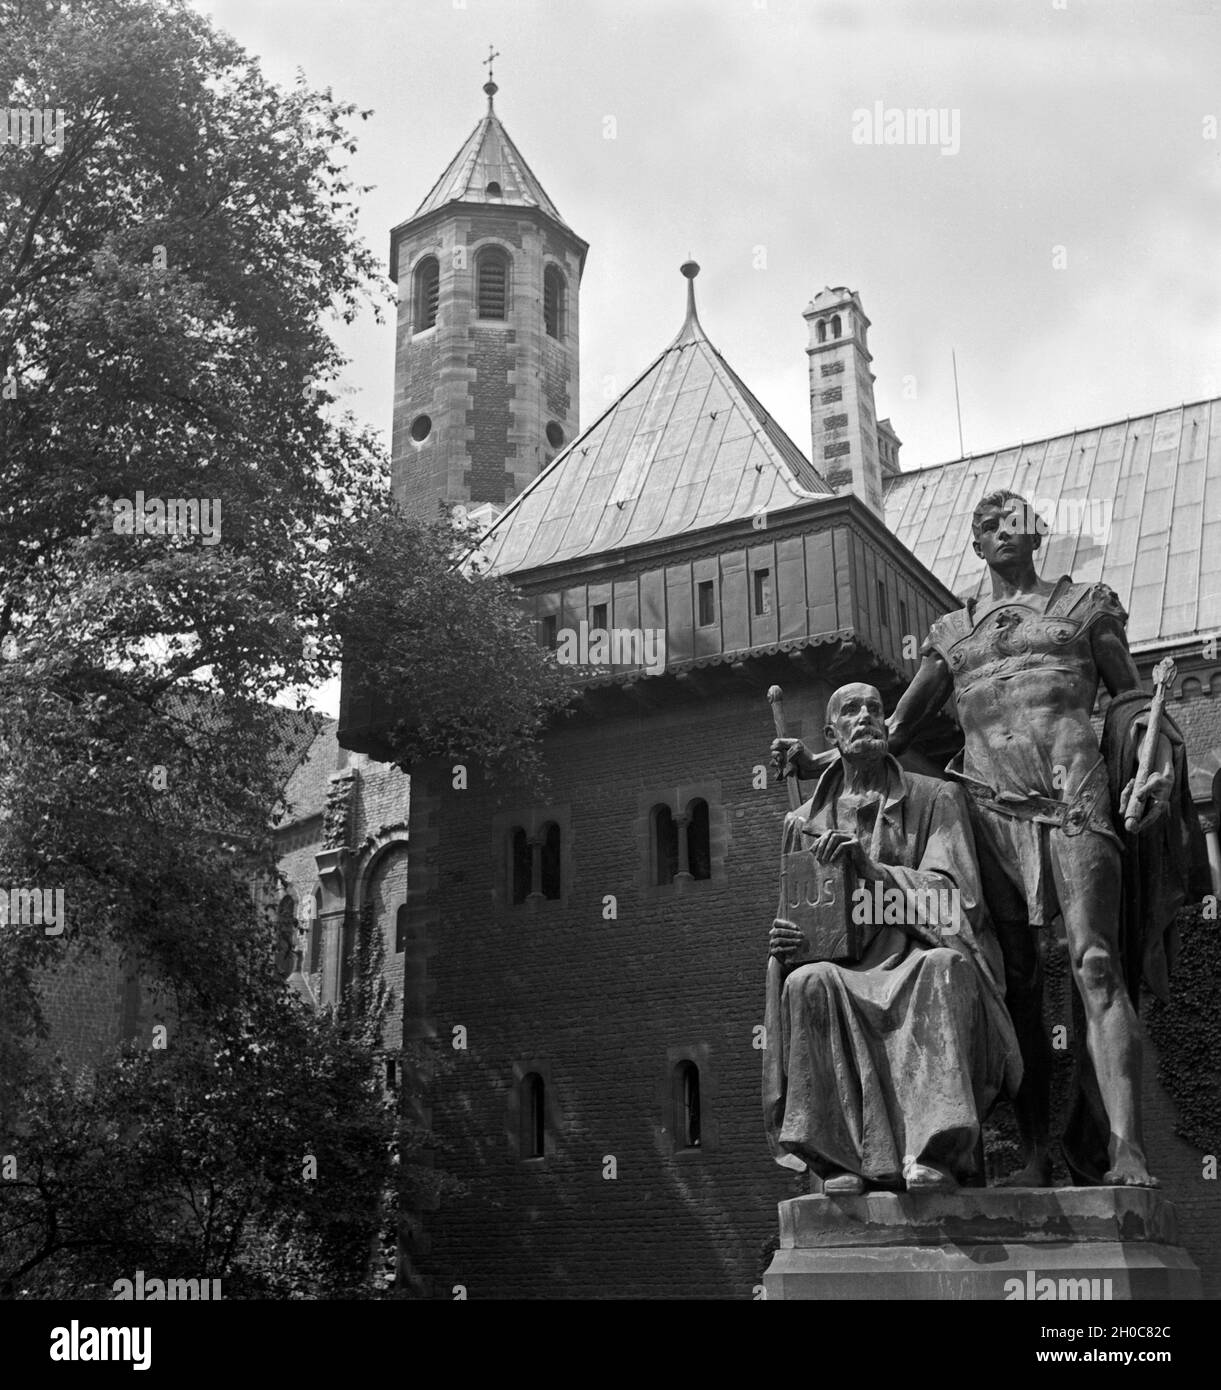 Skulpturengruppe im Garten der Burg Dankwarderode in Braunschweig, Deutschland 1930er Jahre. Group of sculptures at the gardens of Dankwarderode castle at Braunschweig, Germany 1930s. Stock Photo